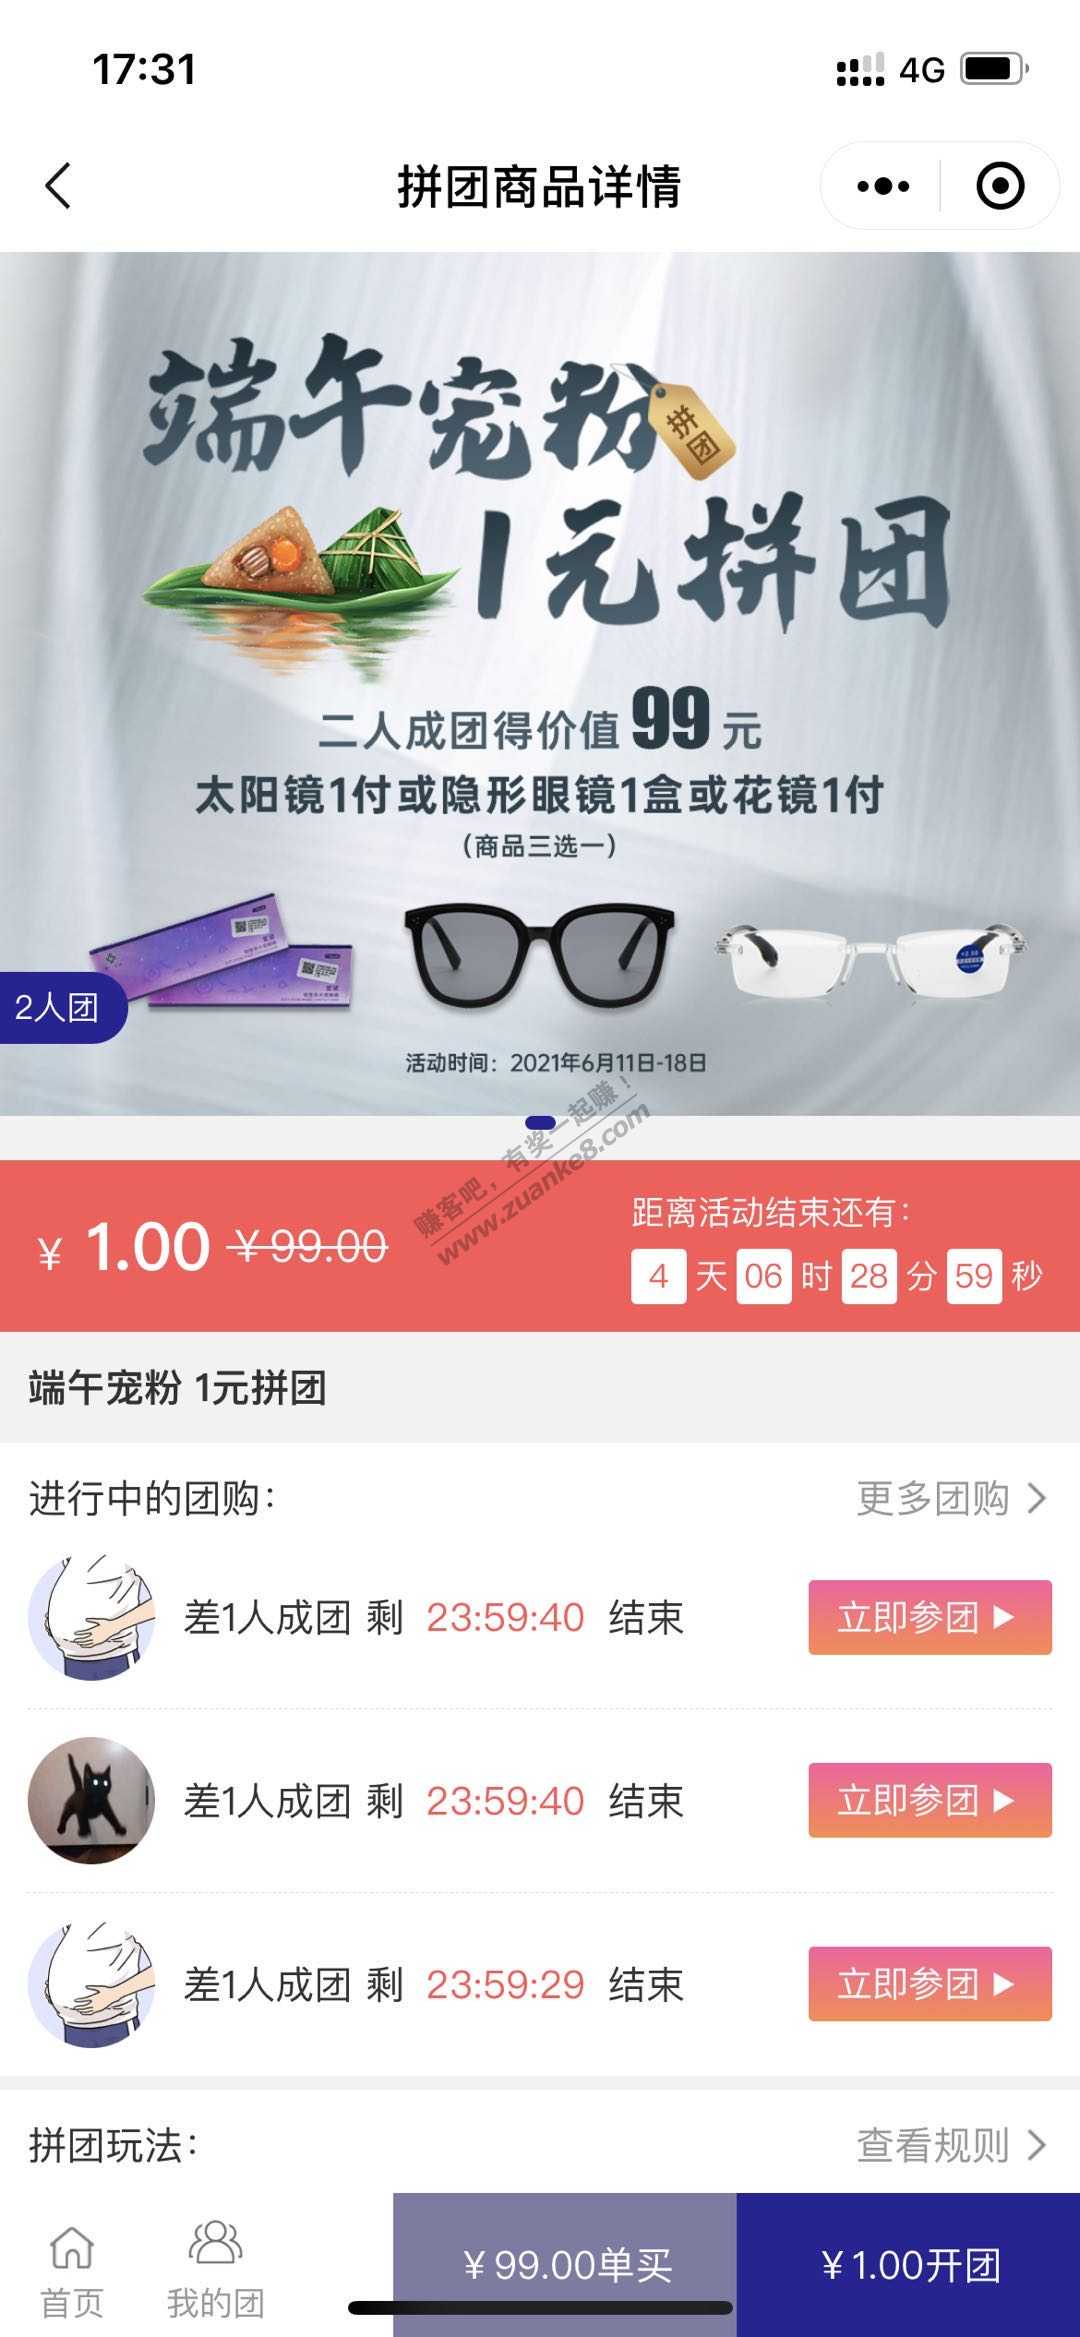 宝视达端午活动 1元买 太阳眼镜 隐形眼镜 花镜 需线下领取-惠小助(52huixz.com)